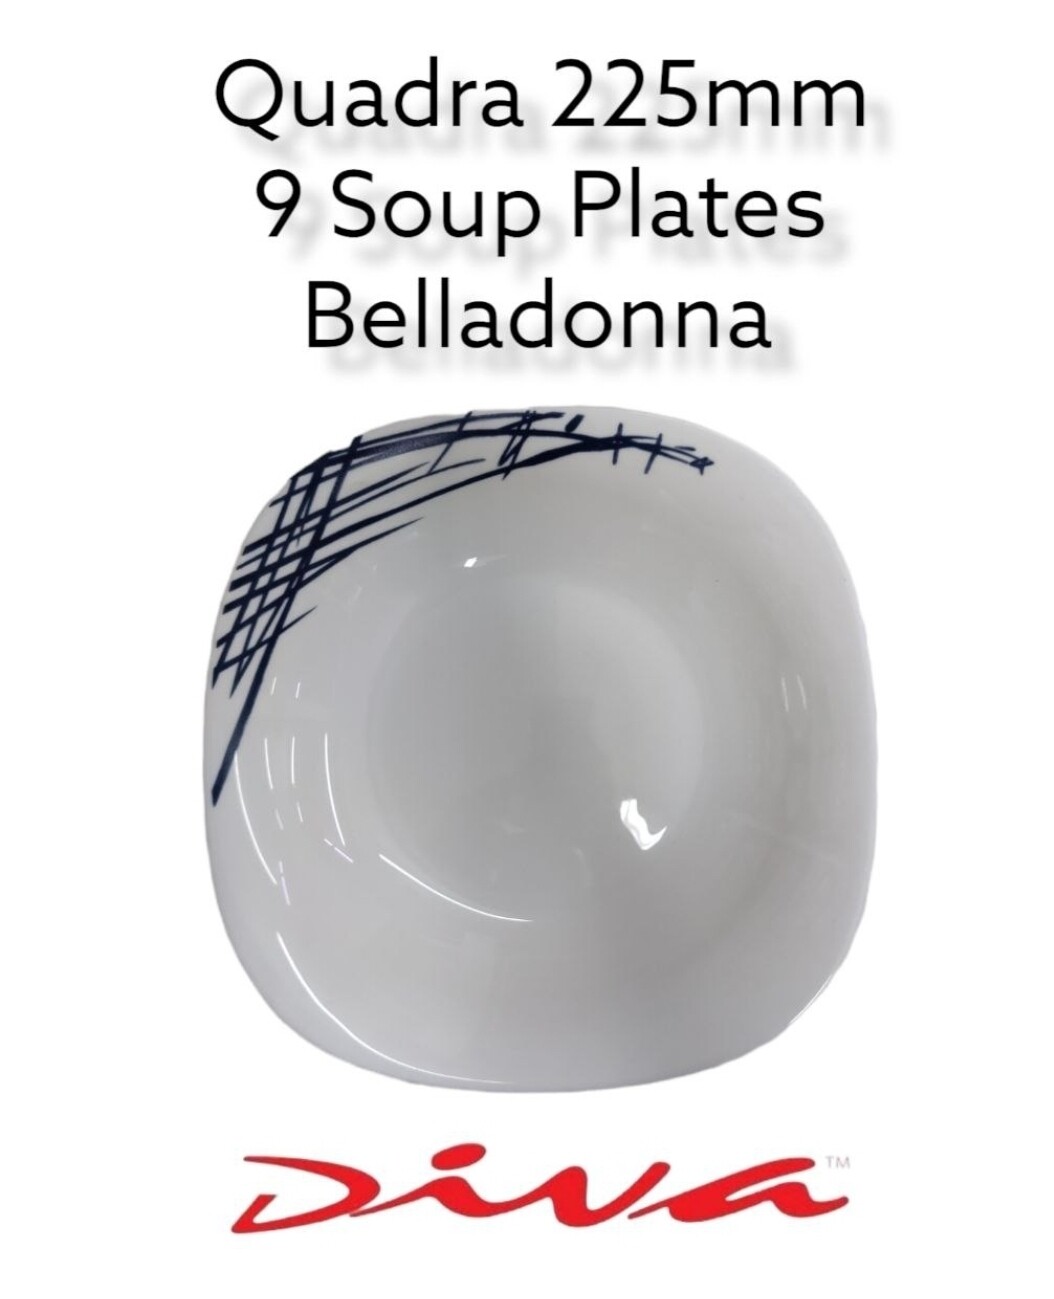 Diva 9 Quadra Square Soup Plates Belladonna 3pcs